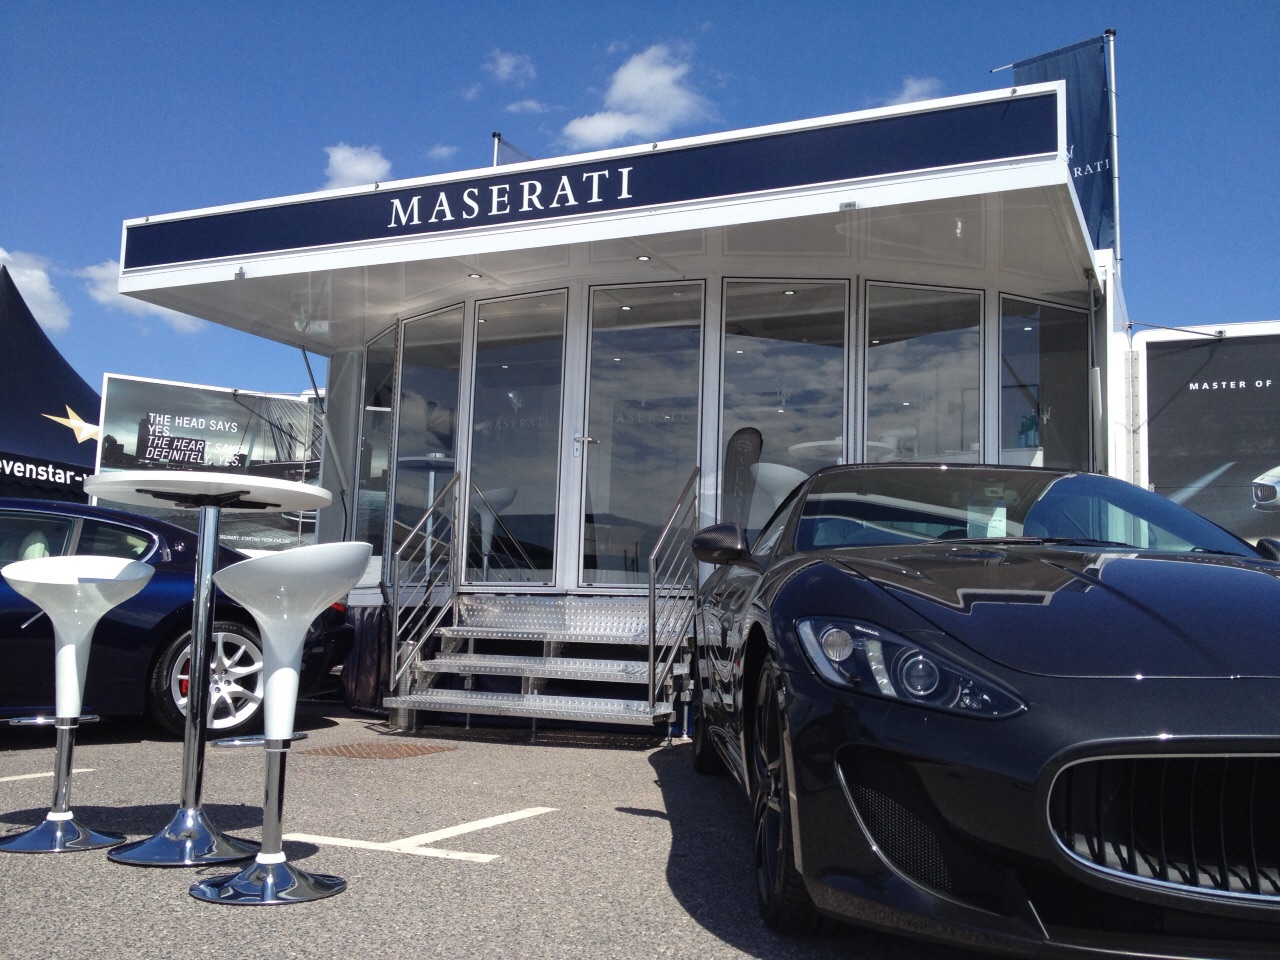 Maserati Exhibition and Hospitality unit show side set up 3